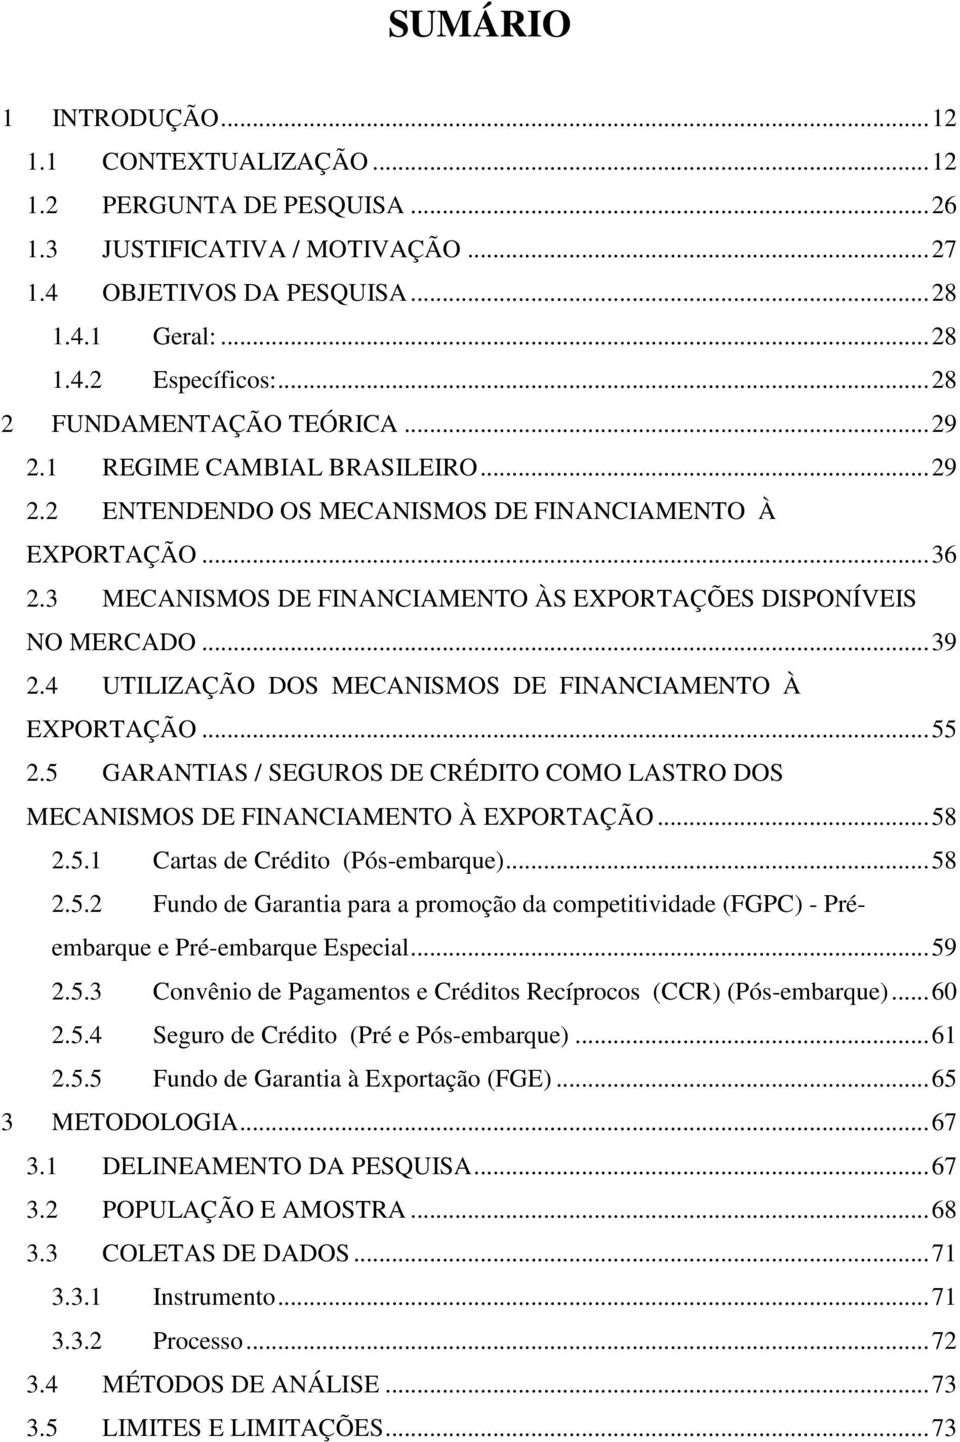 3 MECANISMOS DE FINANCIAMENTO ÀS EXPORTAÇÕES DISPONÍVEIS NO MERCADO...39 2.4 UTILIZAÇÃO DOS MECANISMOS DE FINANCIAMENTO À EXPORTAÇÃO...55 2.